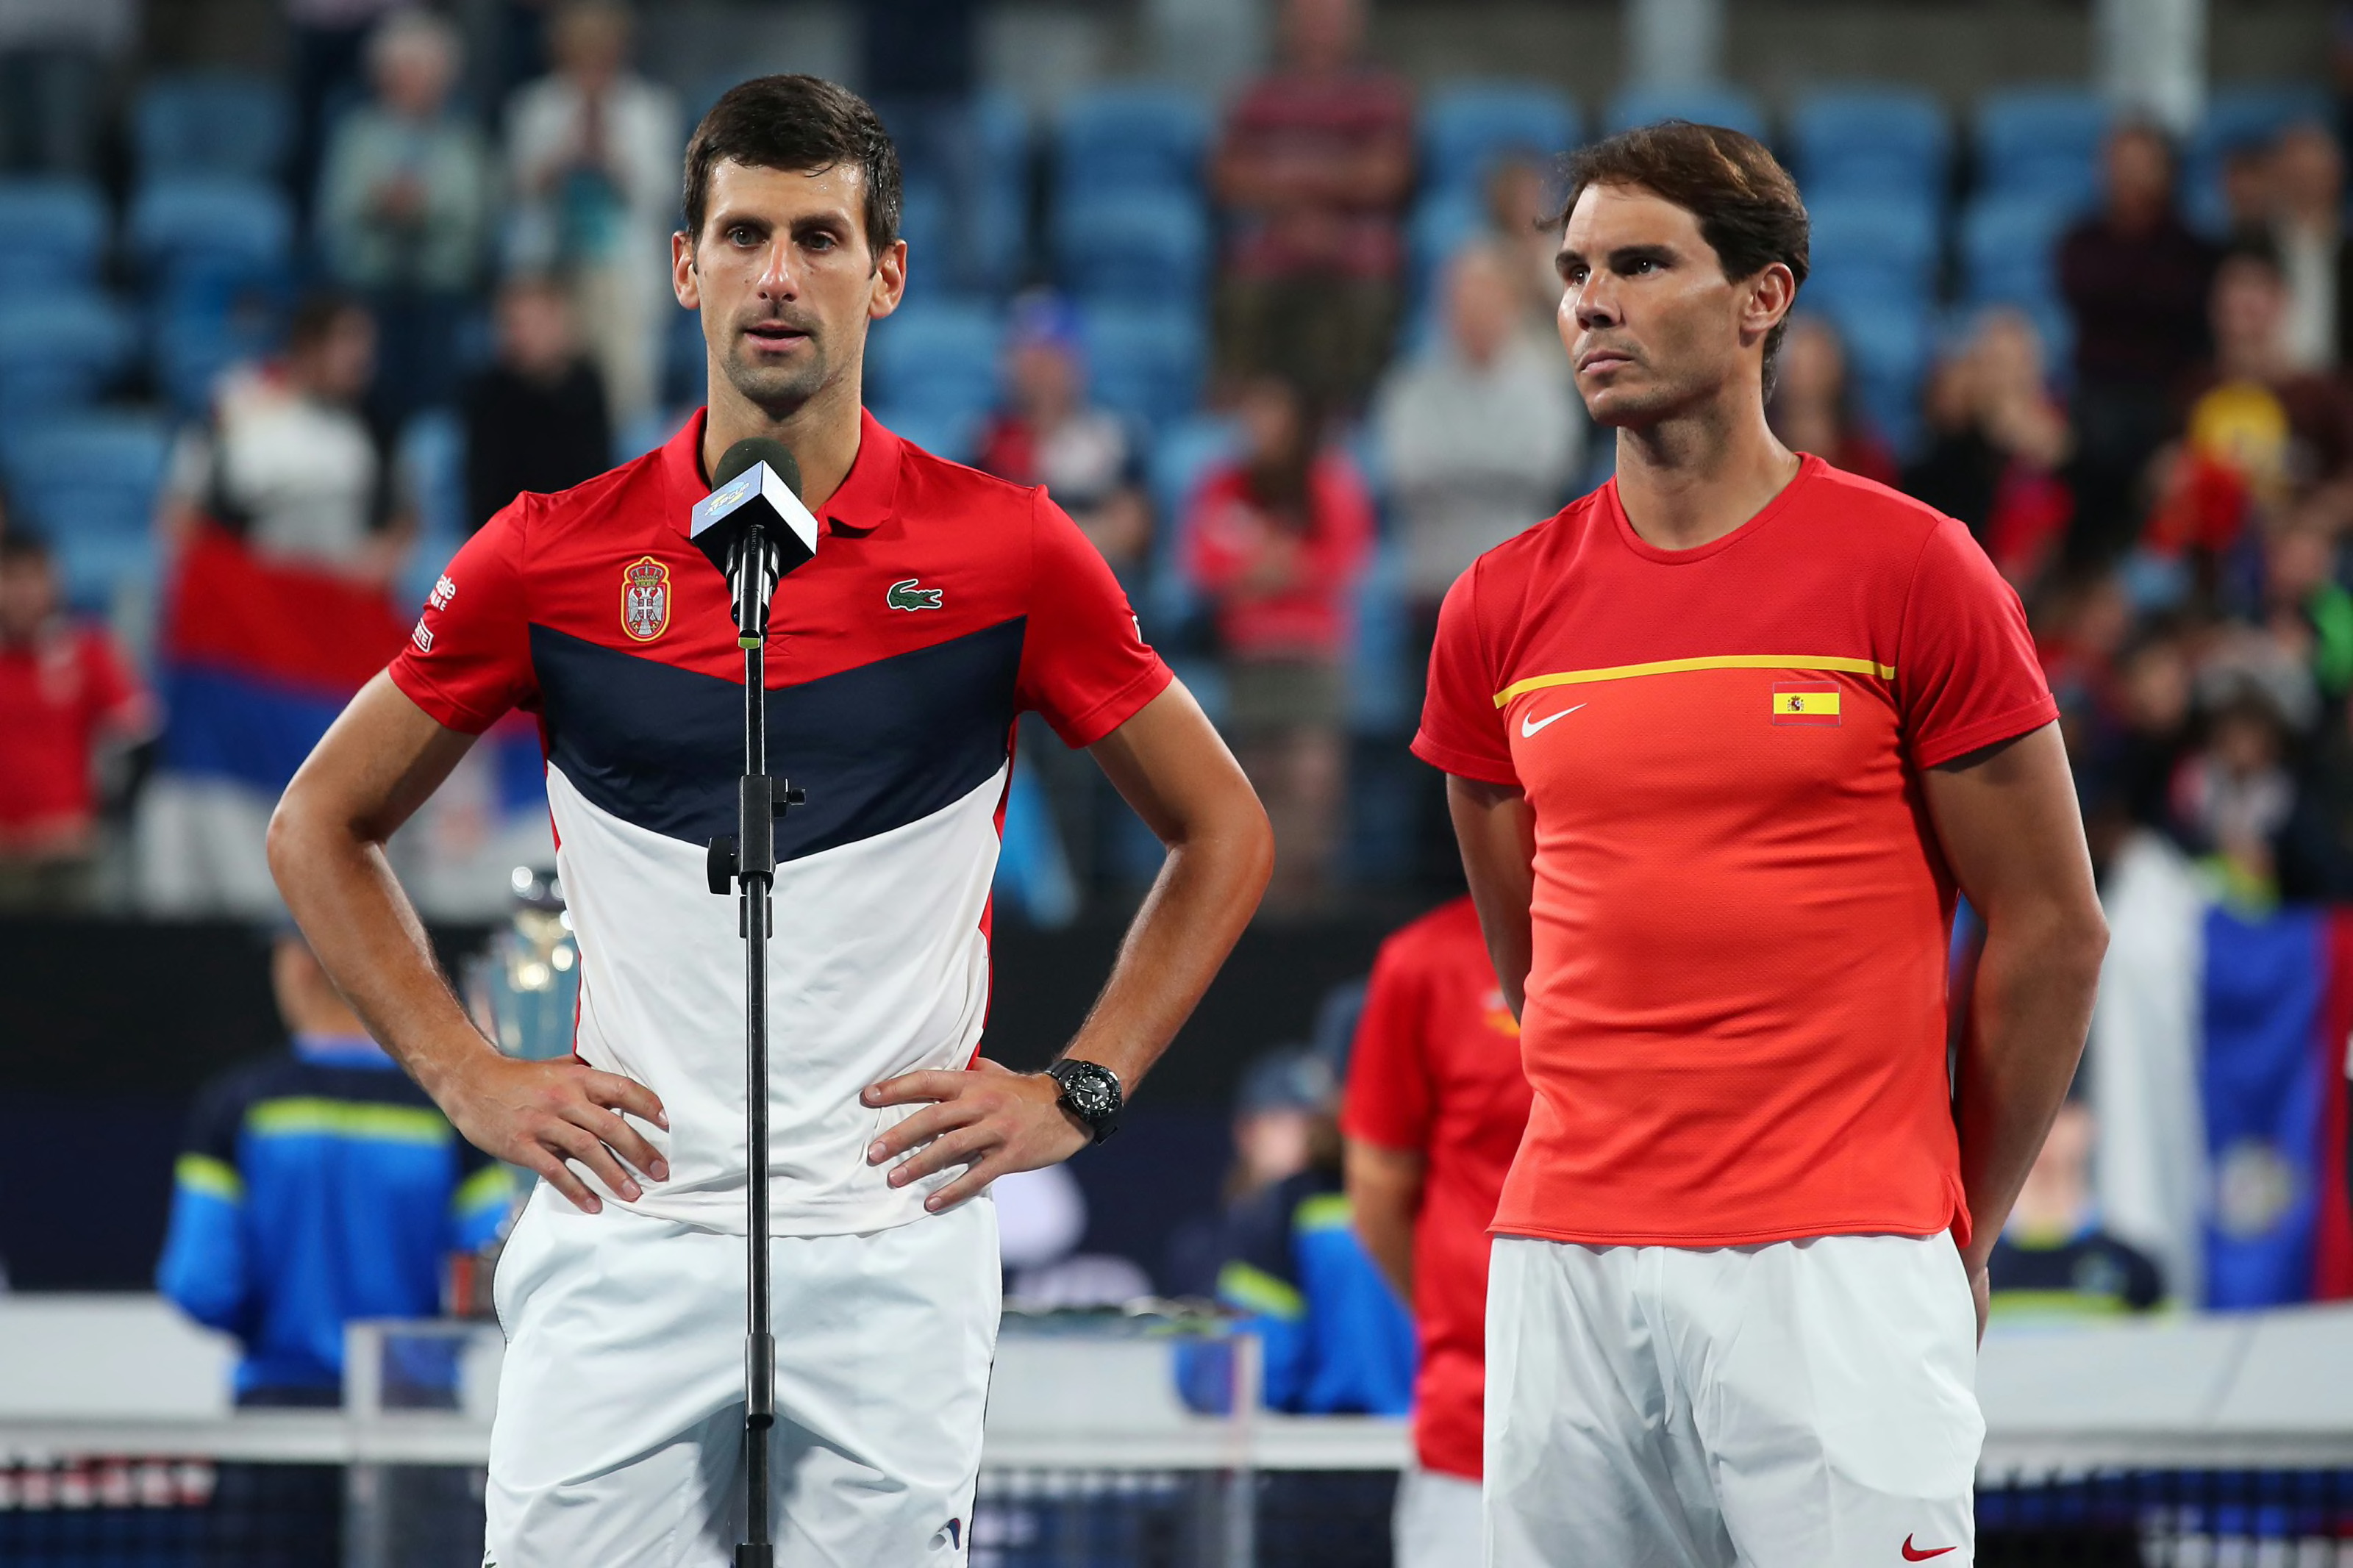 Statistics Battle The Debate for Novak Djokovic or Rafael Nadal